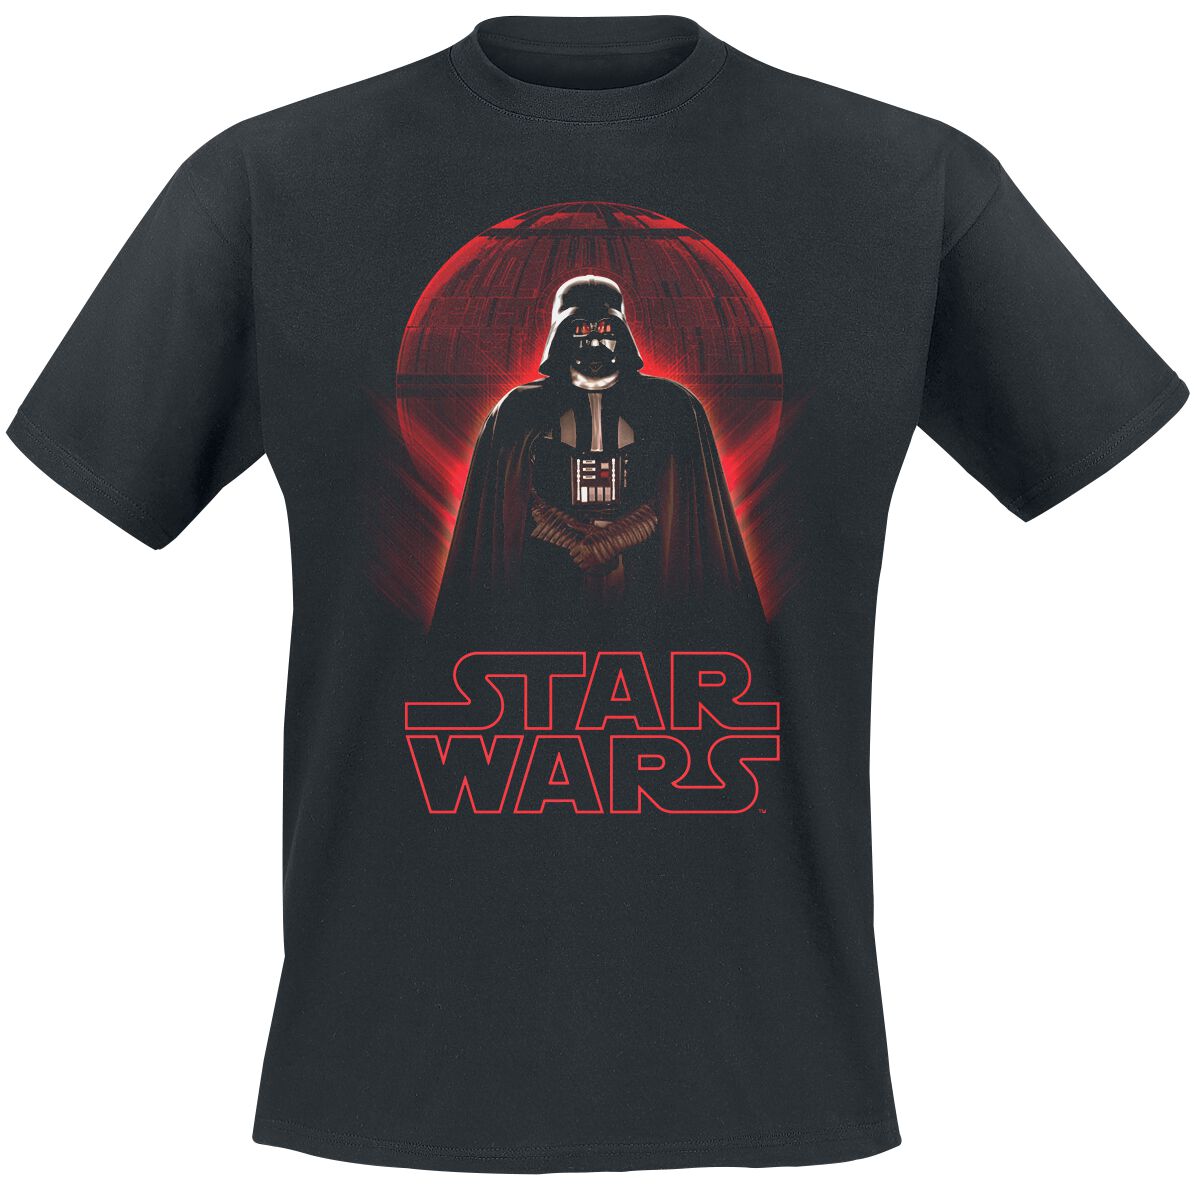 Star Wars T-Shirt - Rogue One - Darth Vader Death Star - 5XL - für Männer - Größe 5XL - schwarz  - Lizenzierter Fanartikel